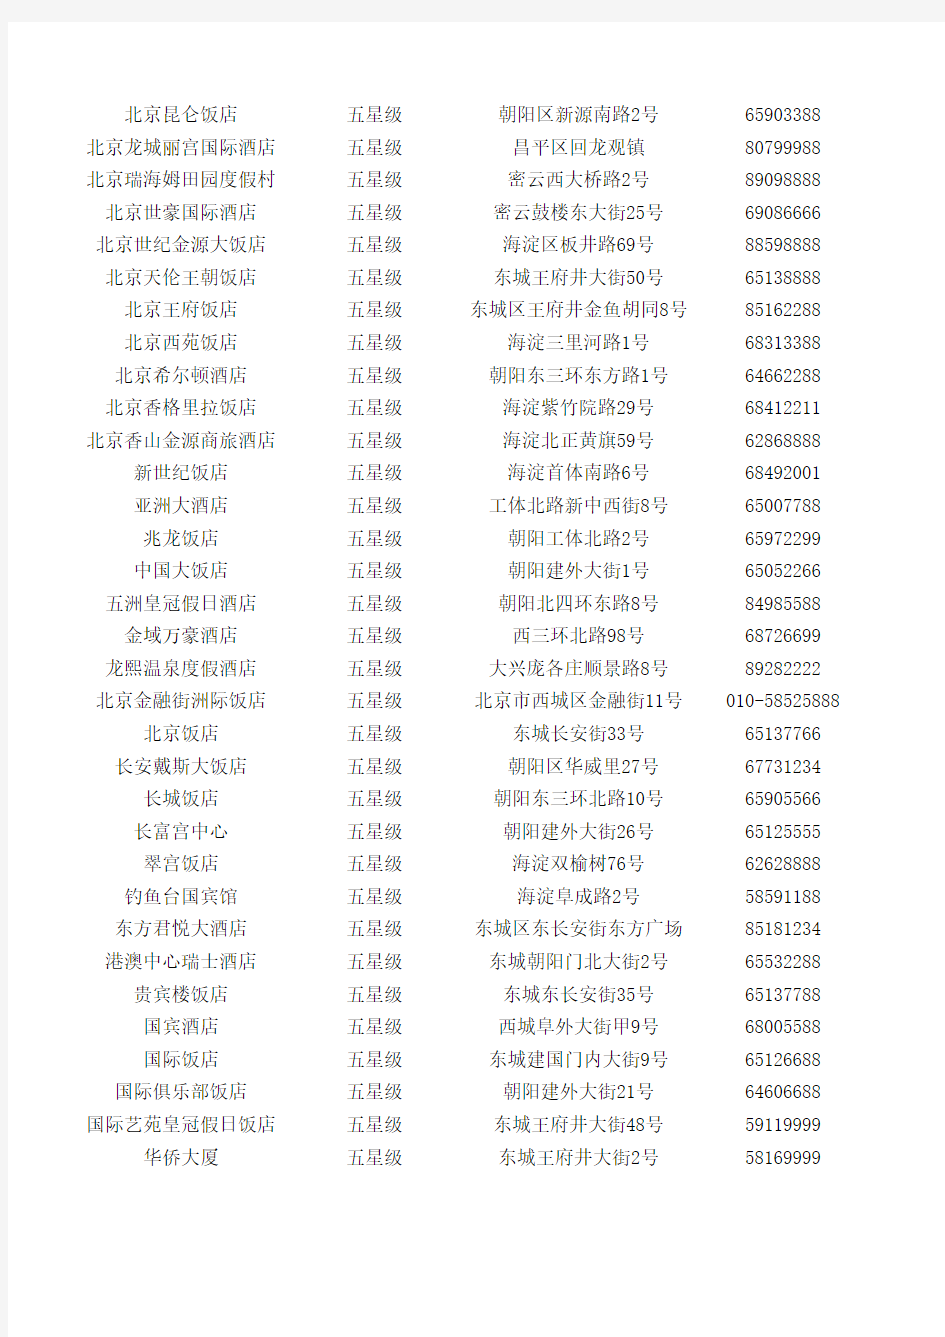 中国所有星级酒店名录及地址电话联系方式